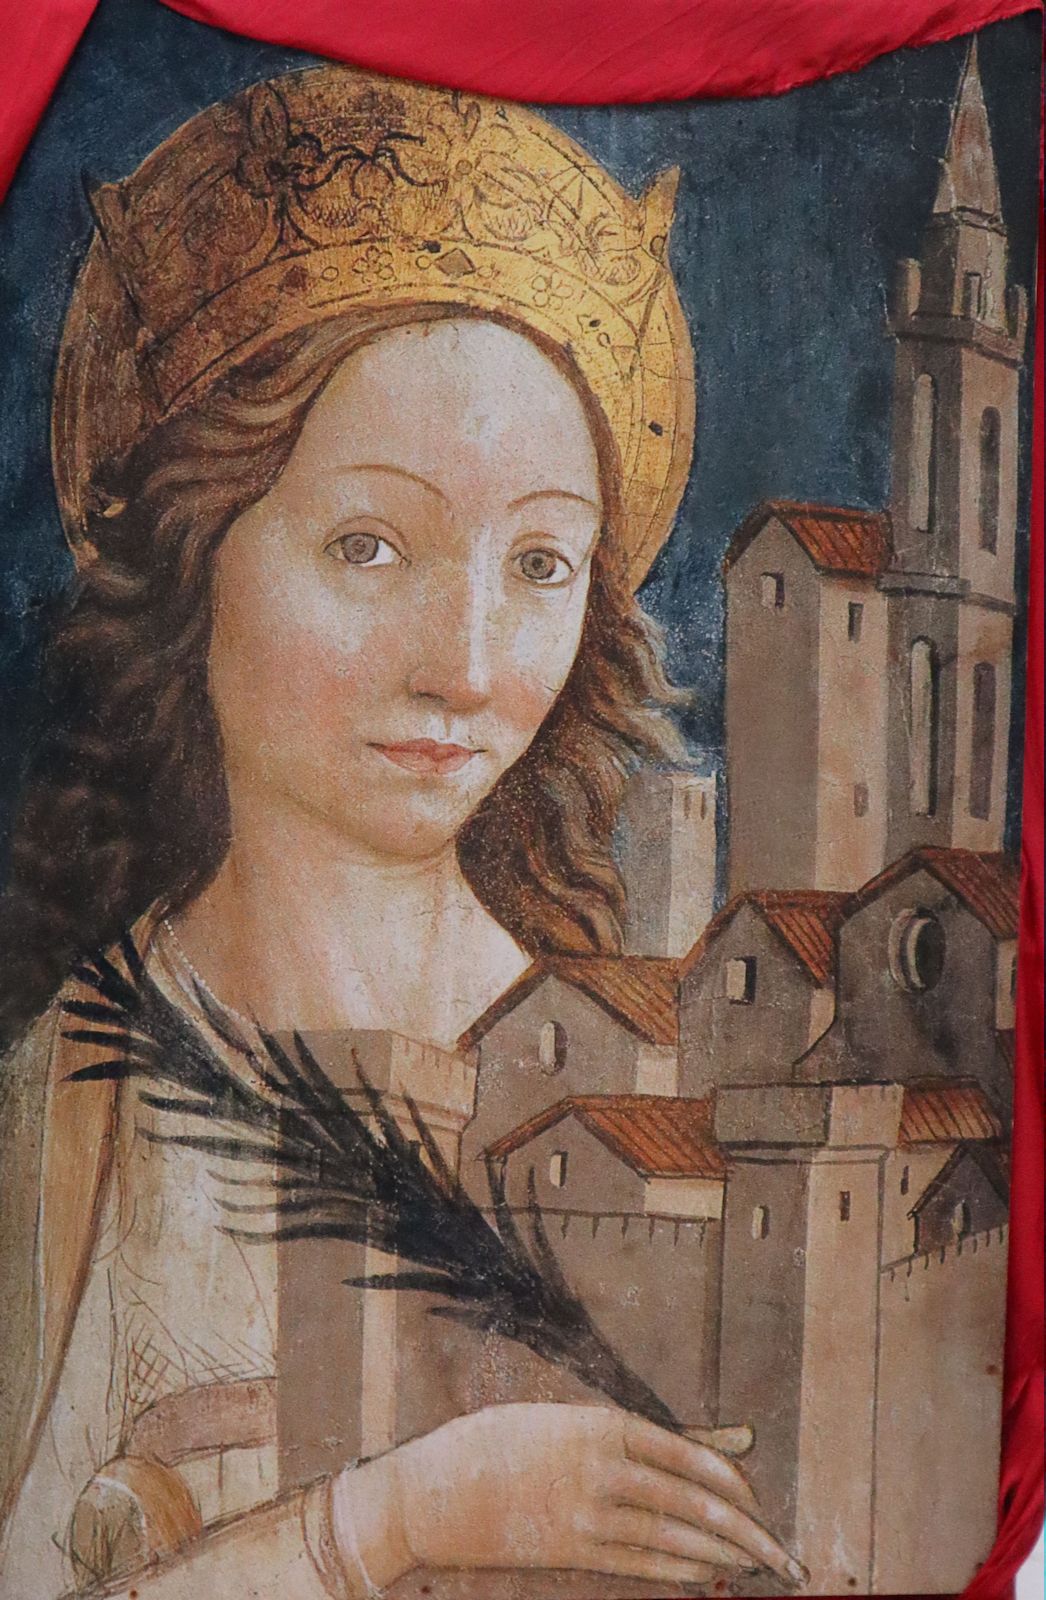 Bild in der Kathedrale in Atri